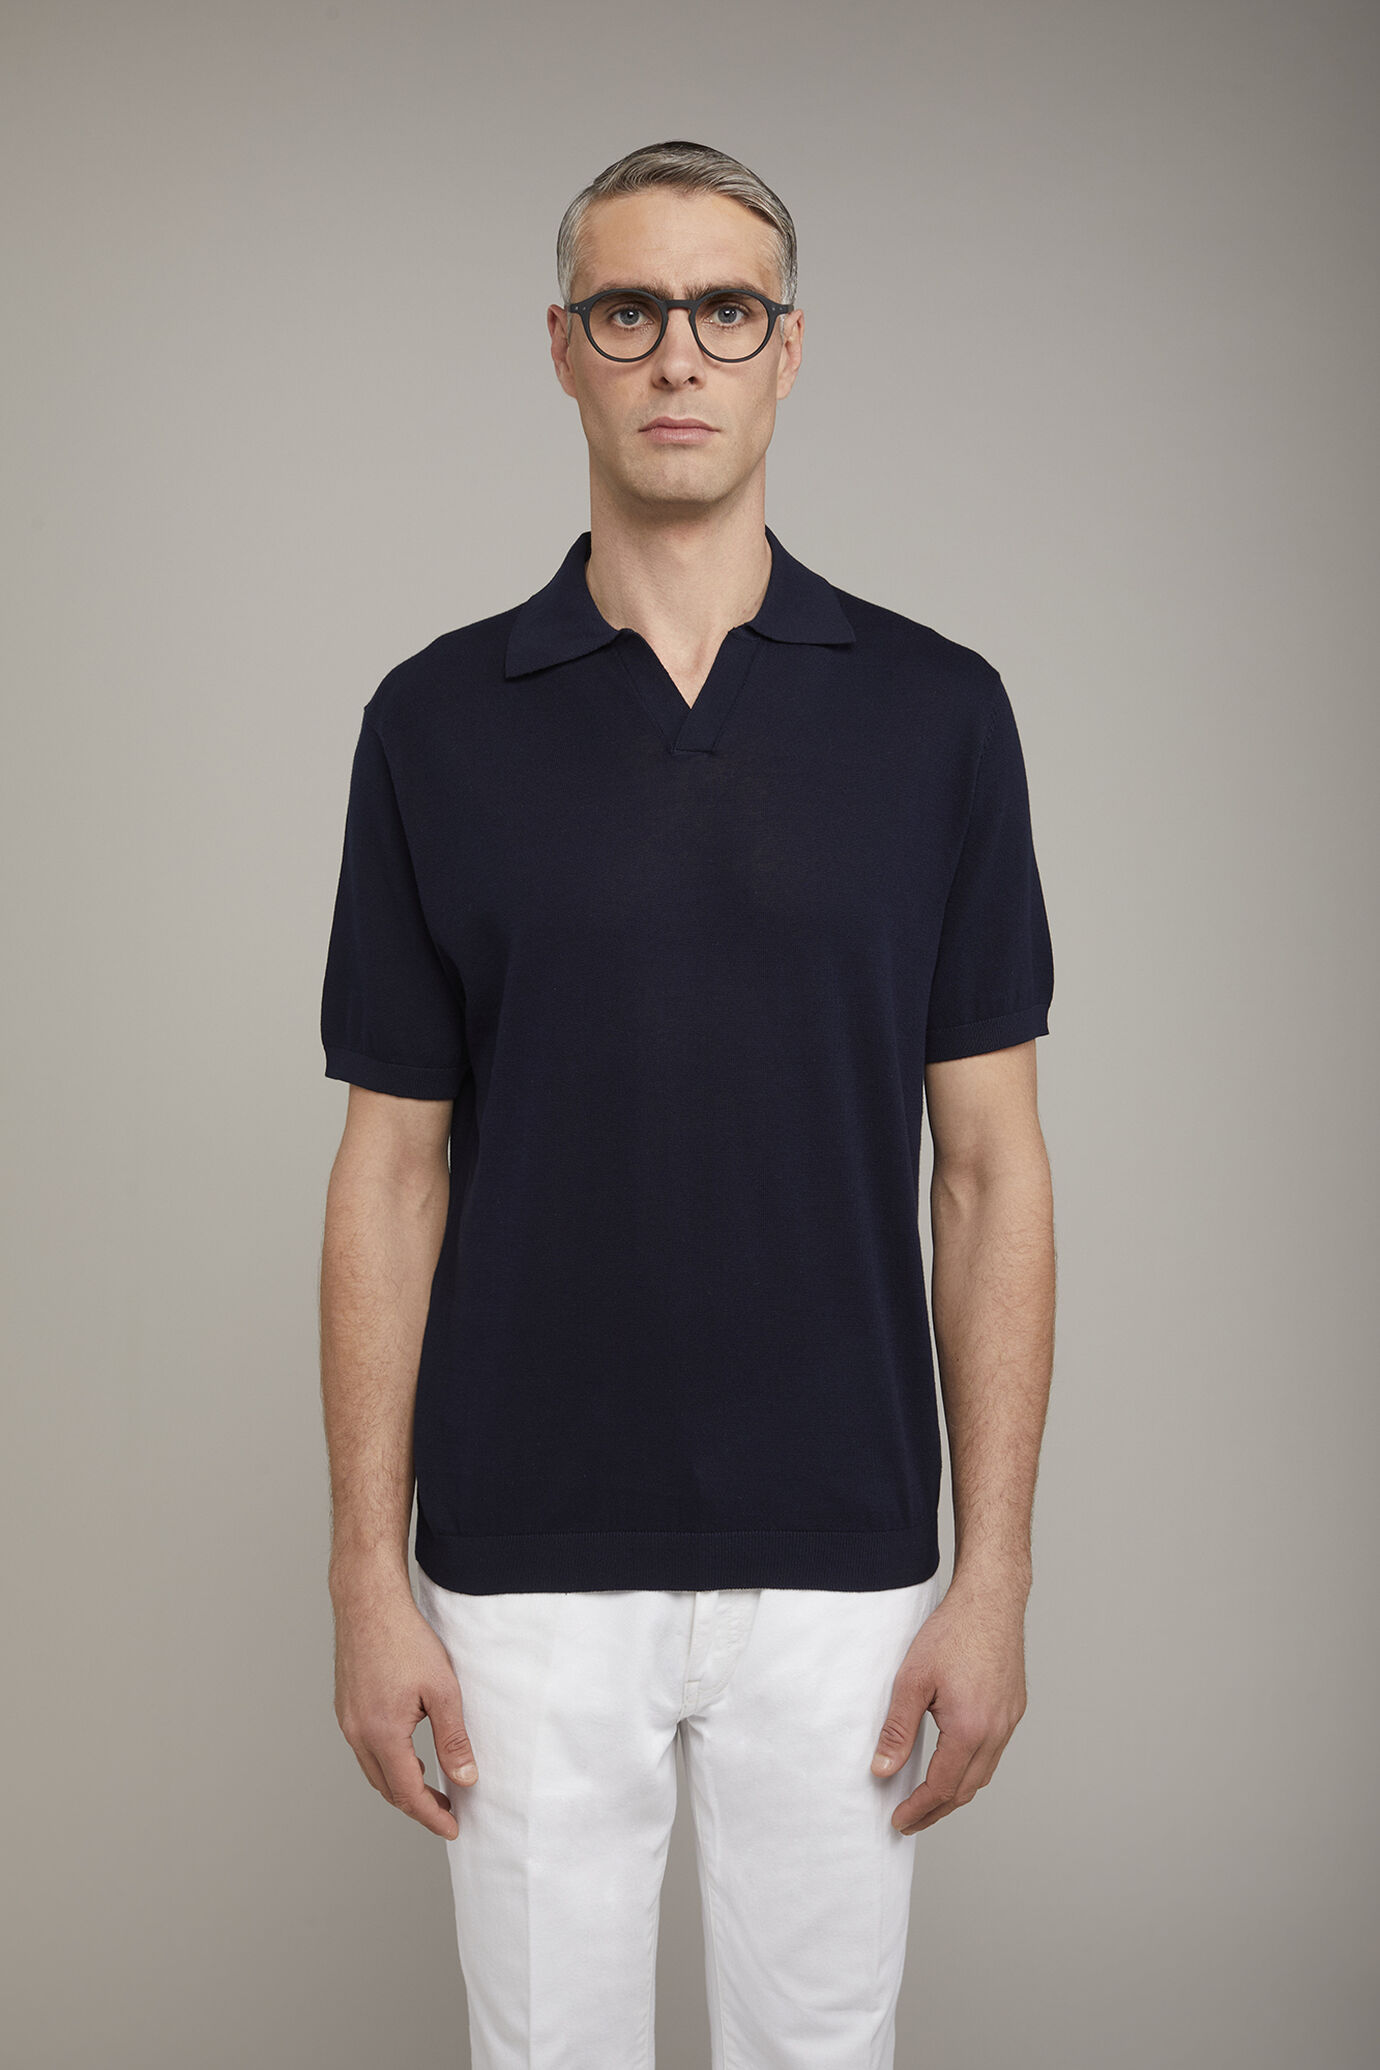 Herren-Poloshirt aus 100 % Baumwolle mit kurzen Ärmeln und Derbykragen in normaler Passform